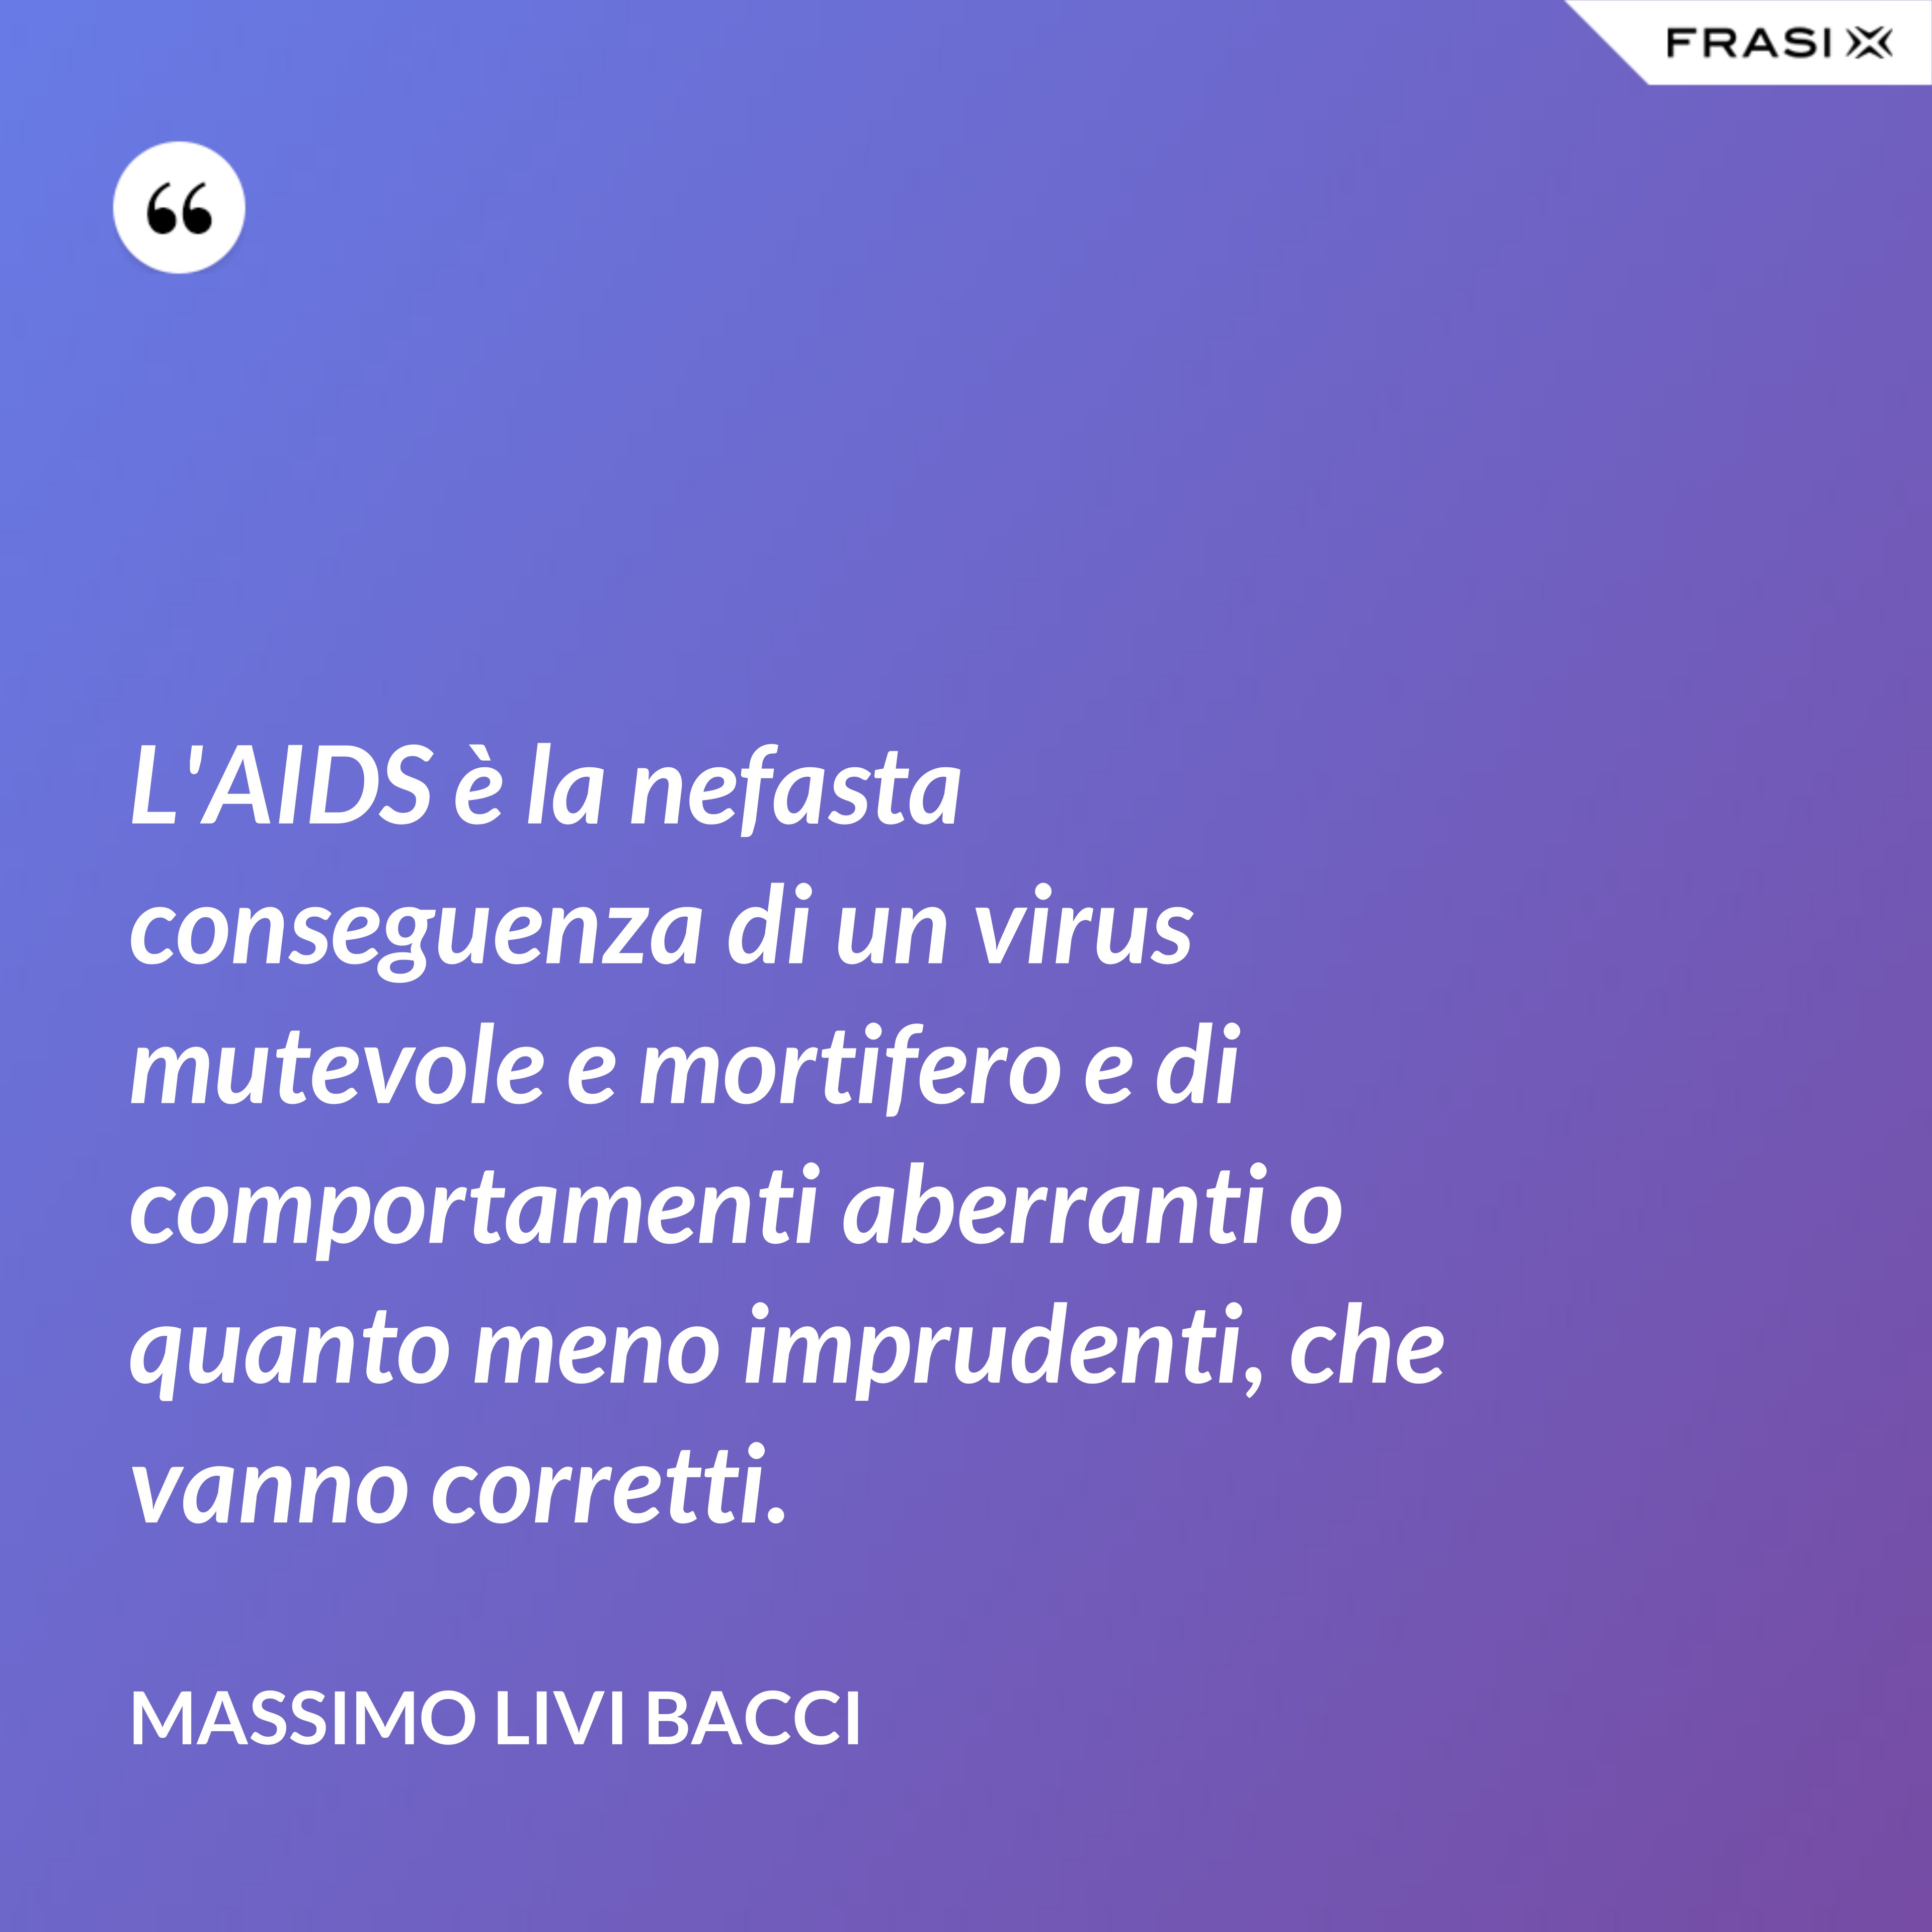 L'AIDS è la nefasta conseguenza di un virus mutevole e mortifero e di comportamenti aberranti o quanto meno imprudenti, che vanno corretti. - Massimo Livi Bacci